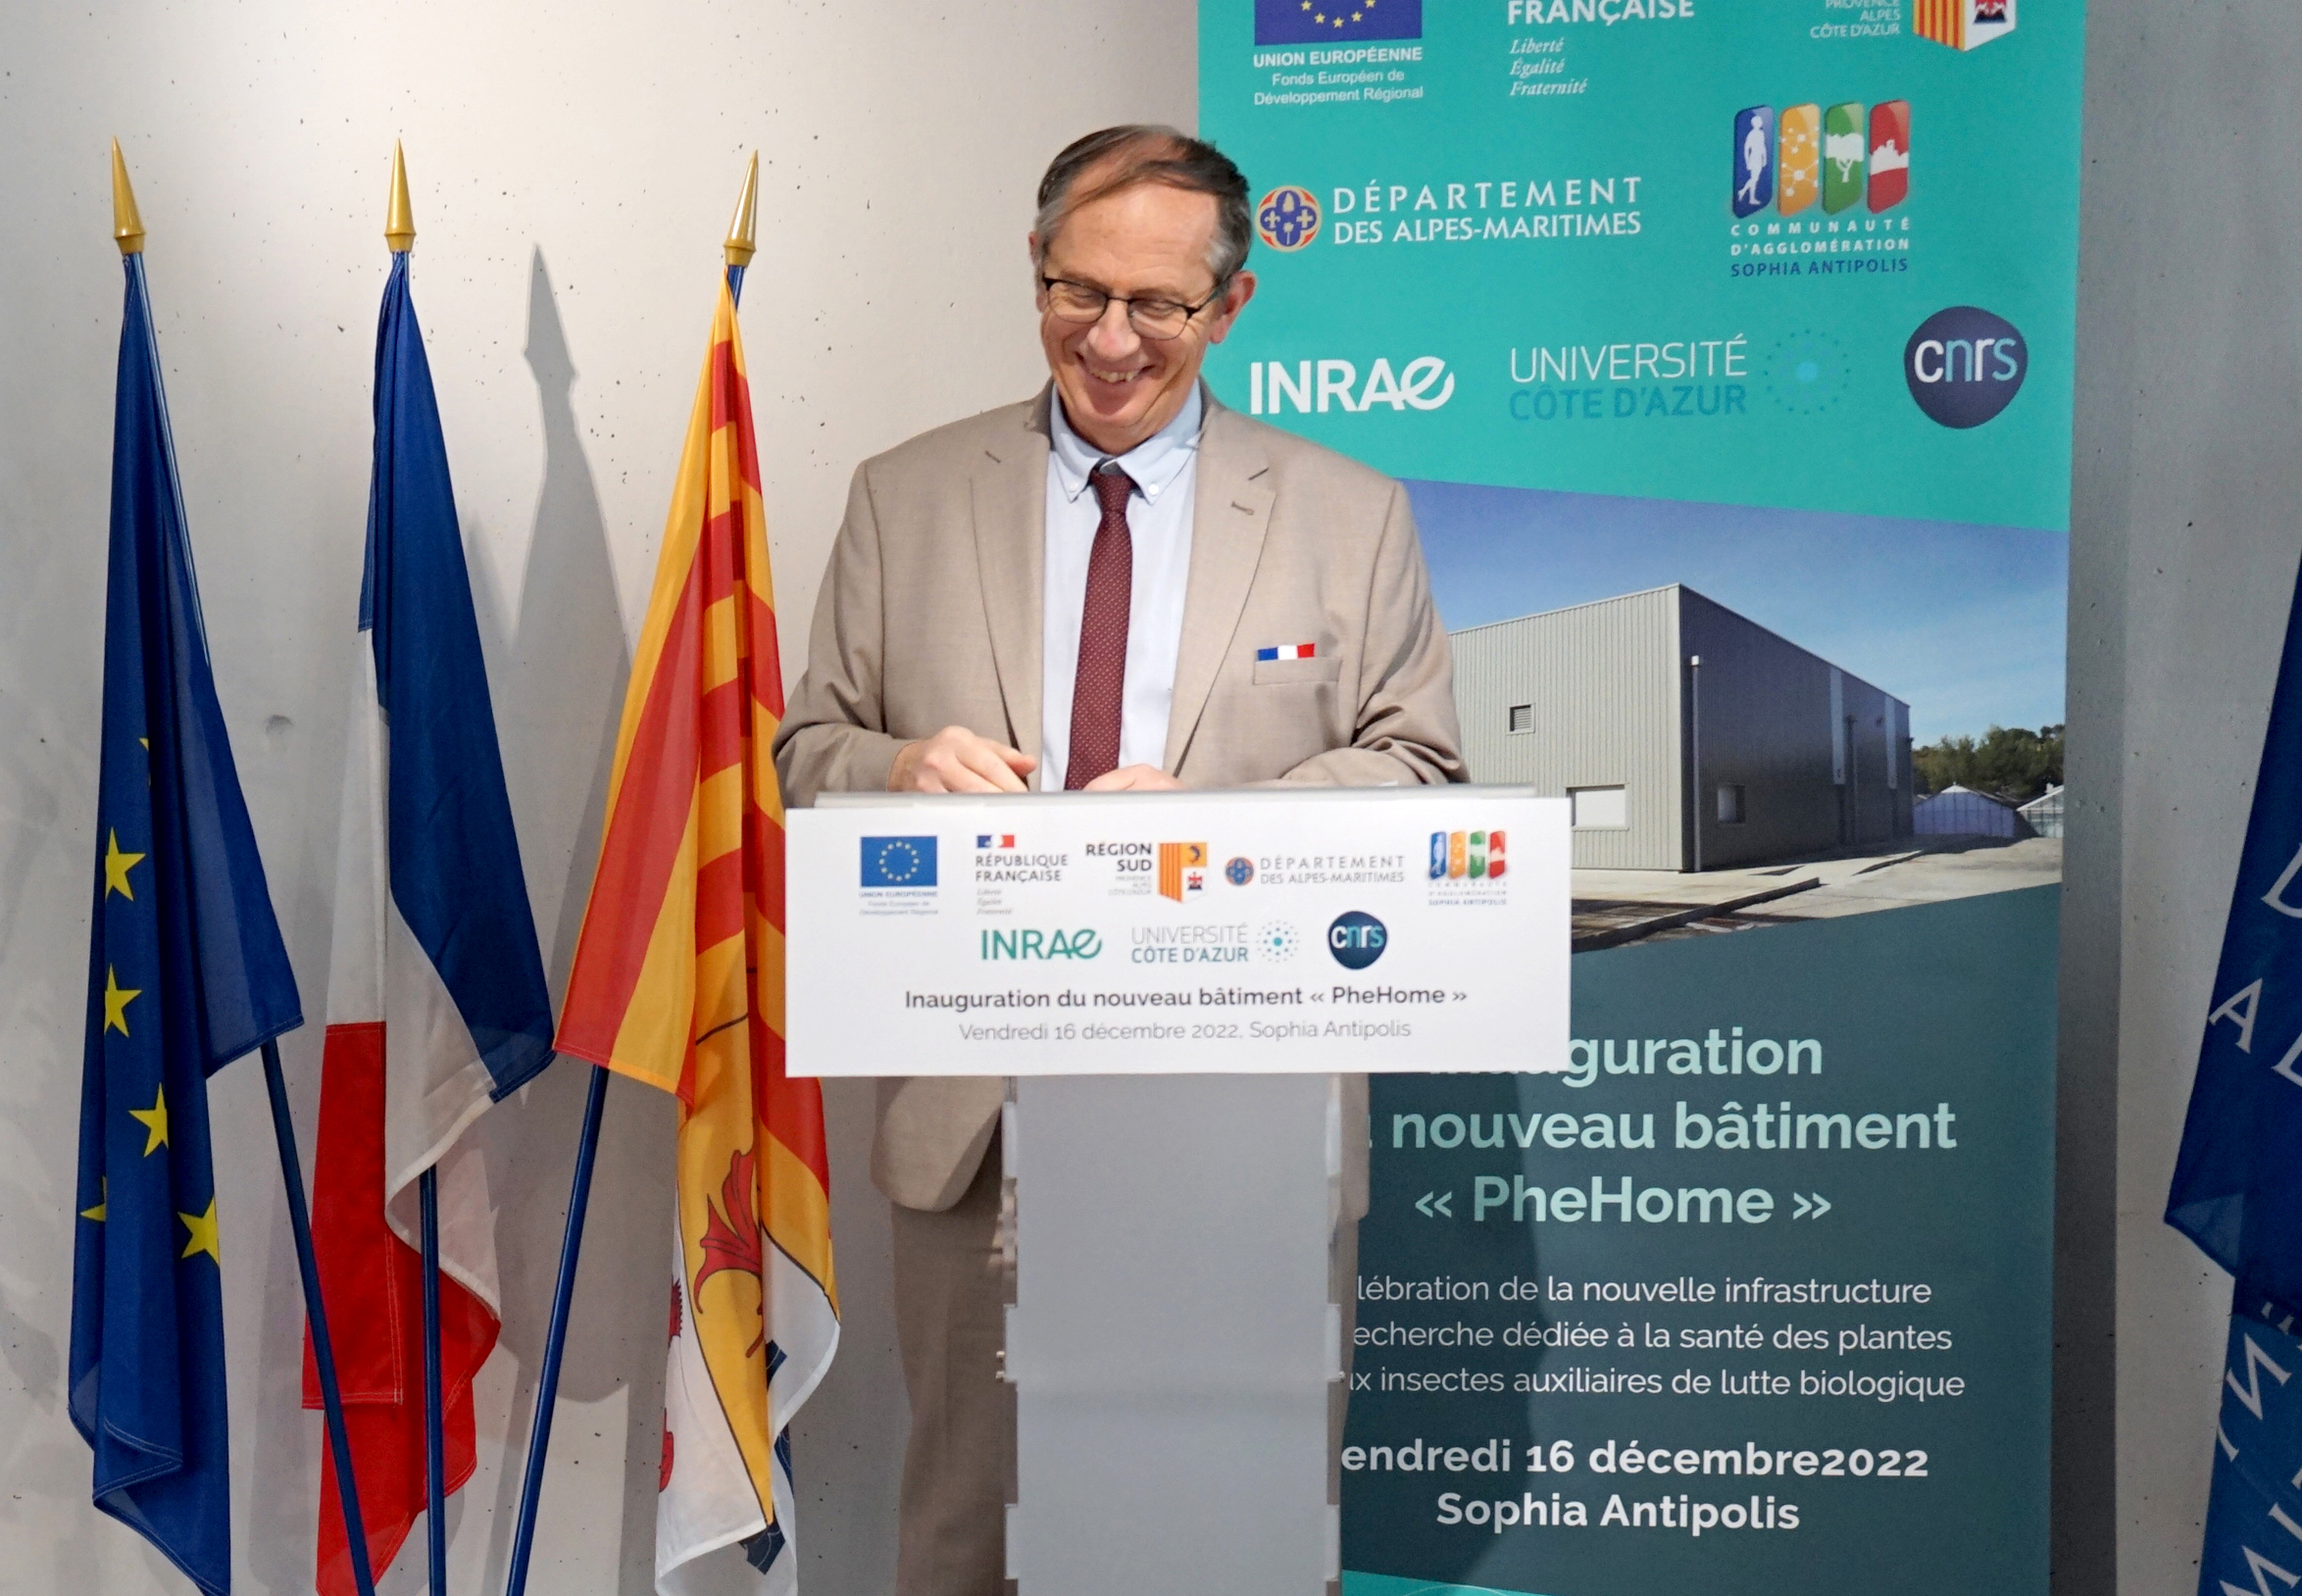 Discours inaugural du nouveau bâtiment de recherche "PheHome" par Jean-Philippe Nabot, représentant de la Présidence du centre INRAE Provence-Alpes-Côte d'Azur